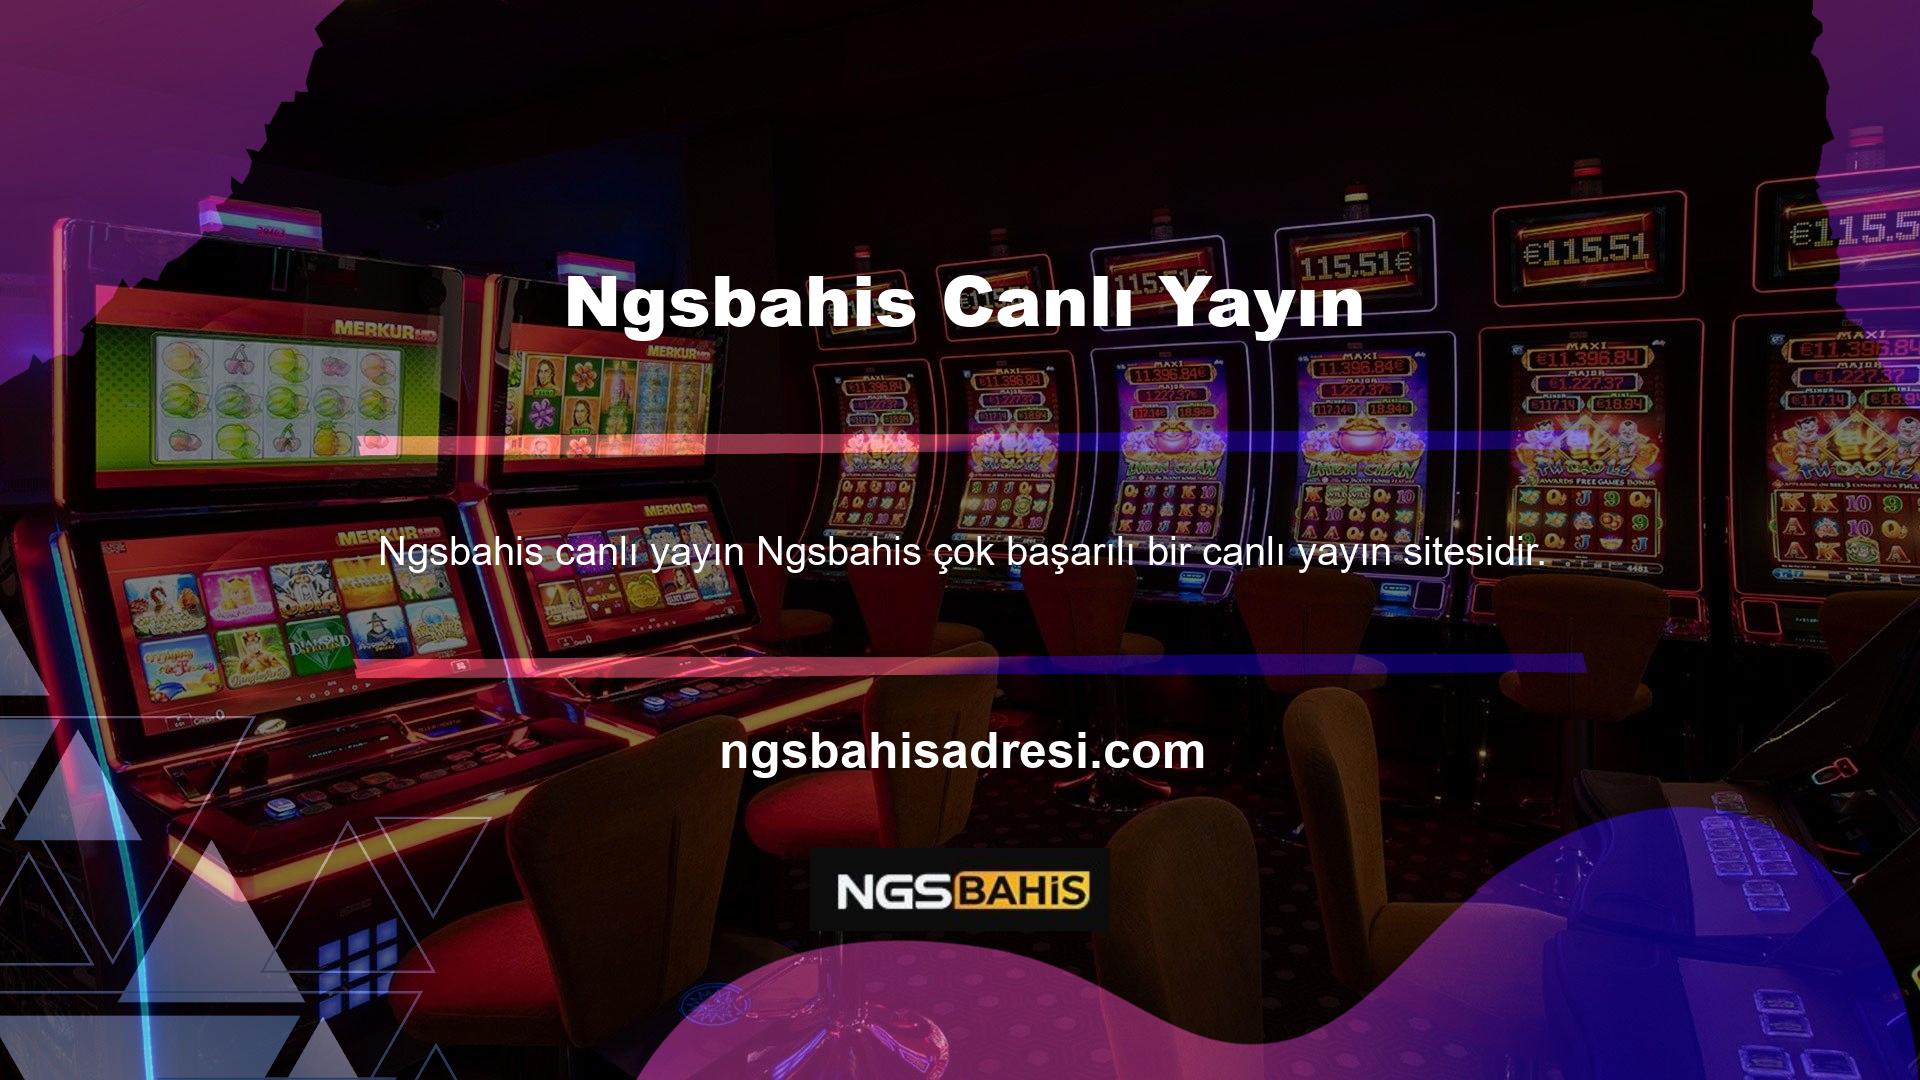 Ngsbahis, canlı yayın işlevini bahis pazarına tanıtan ilk sitelerden biriydi